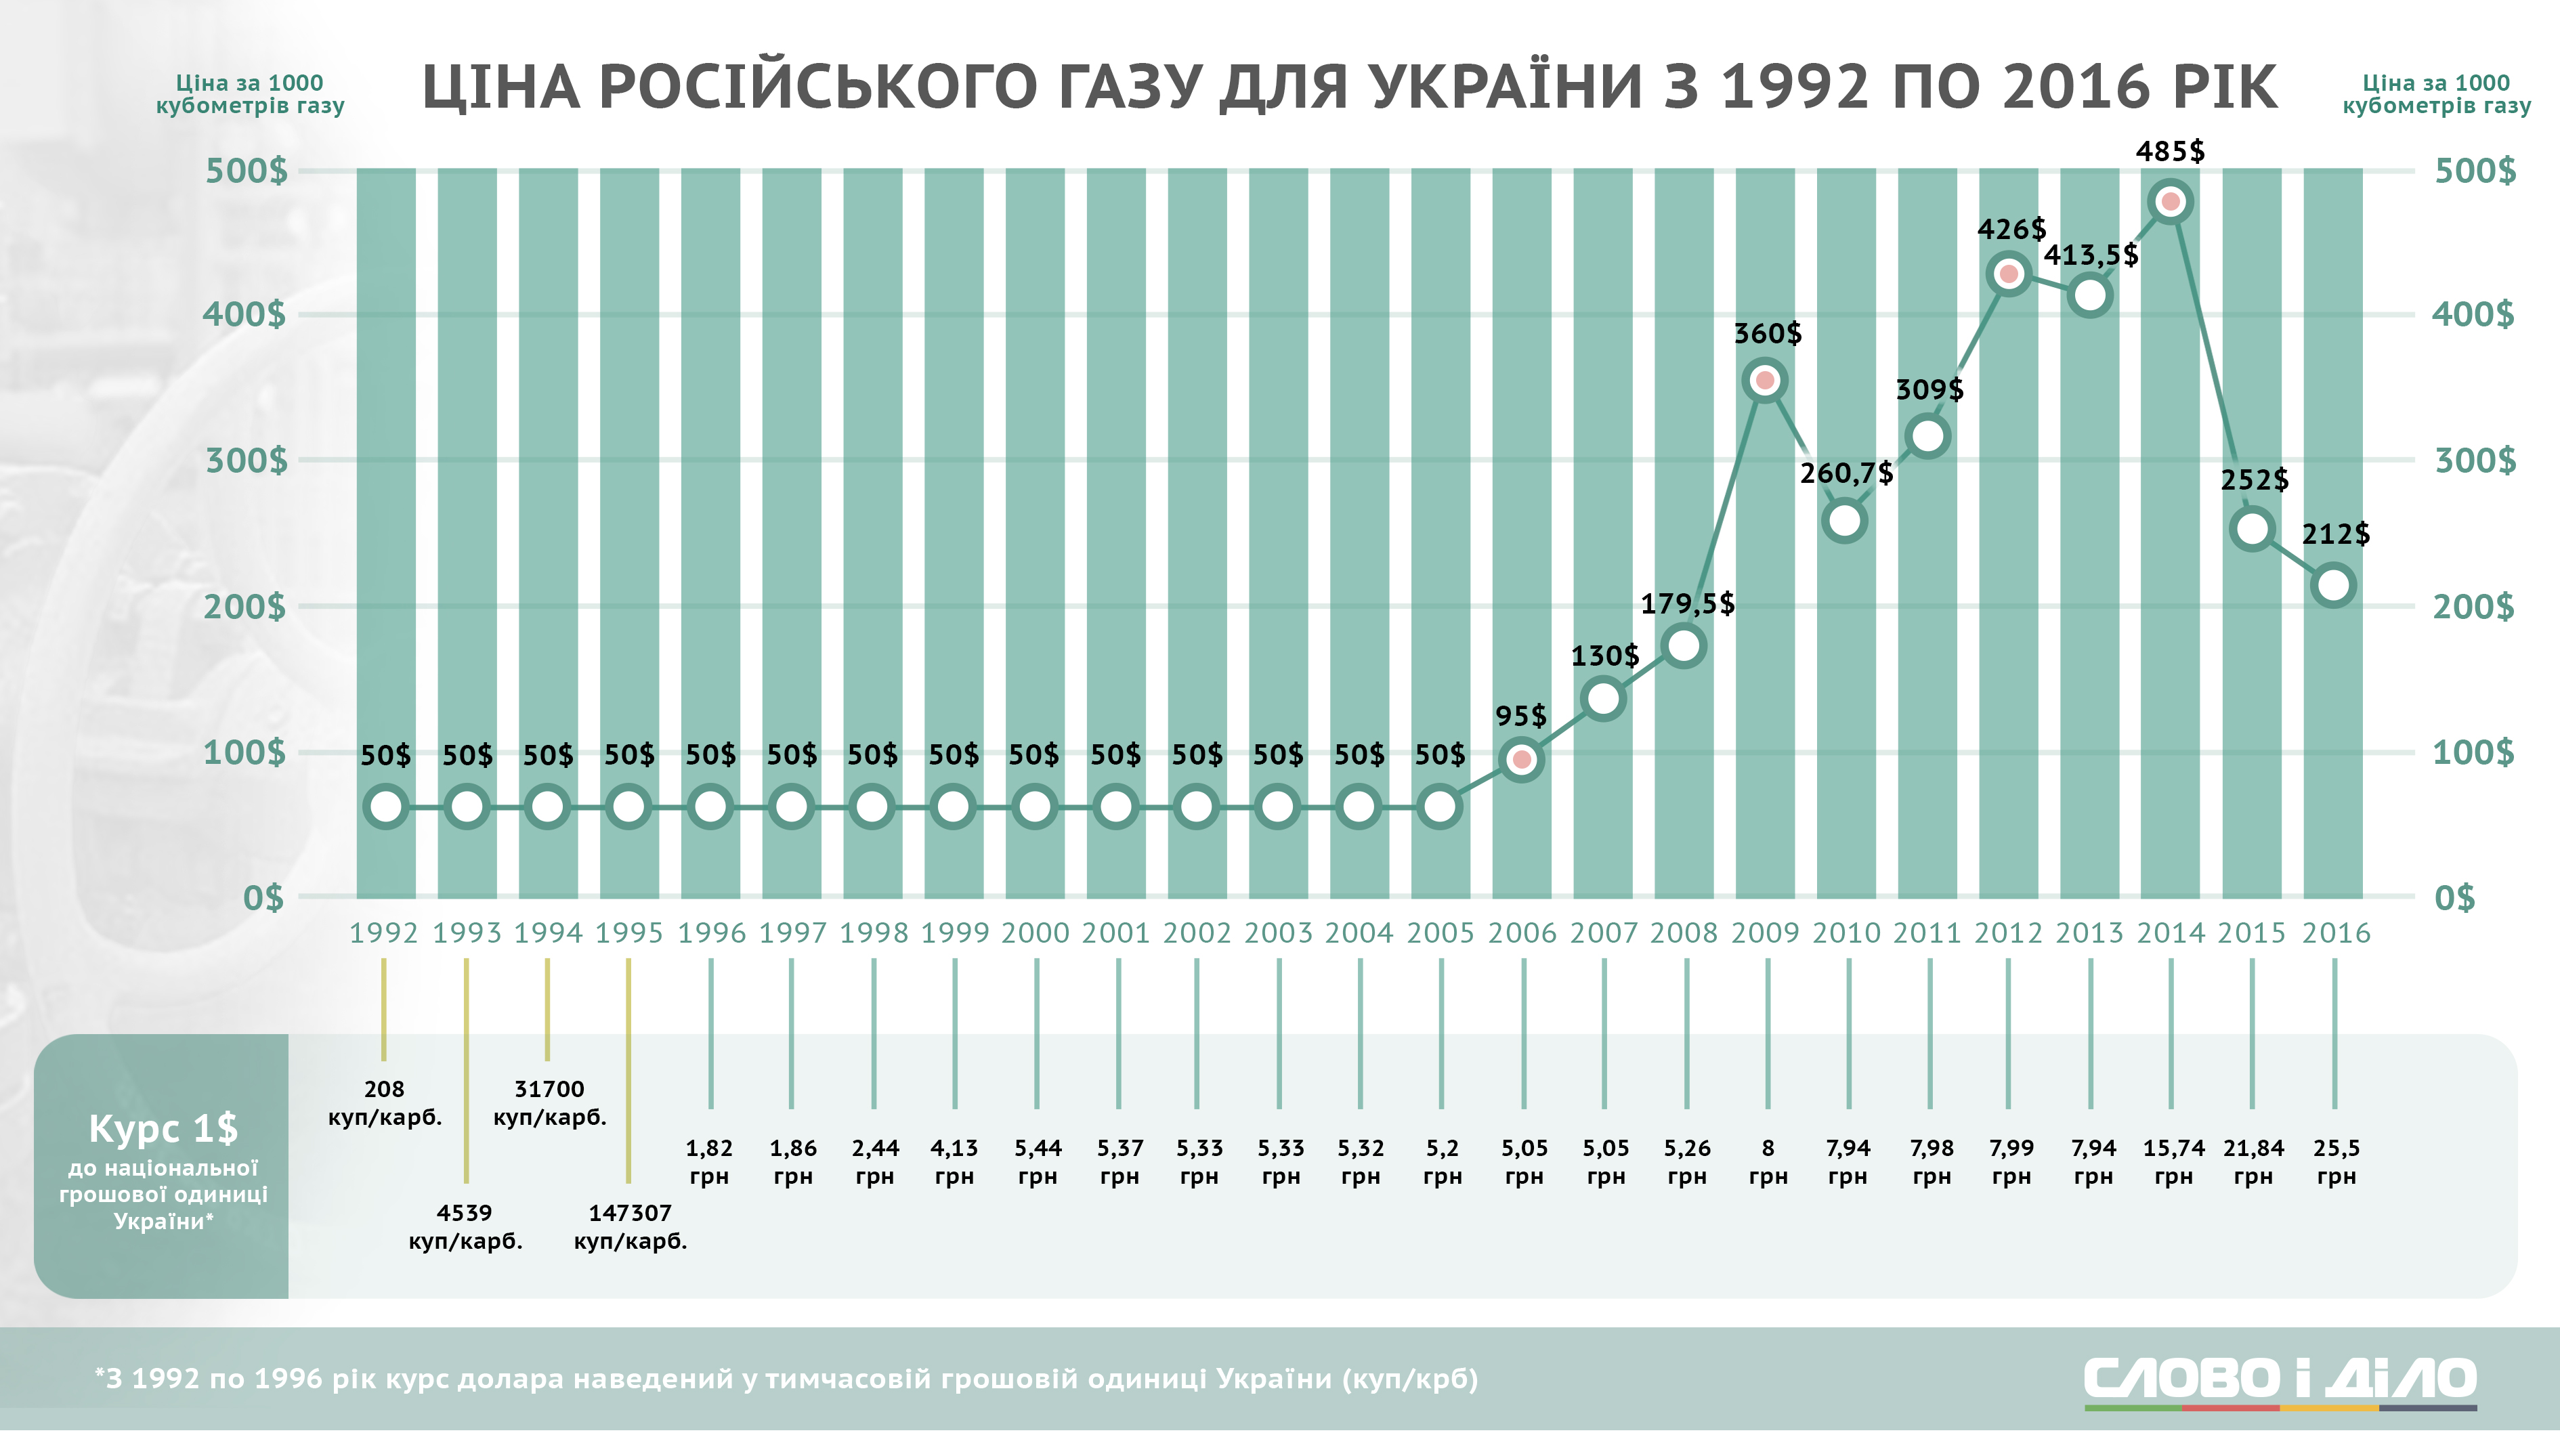 Сколько газа в украине. Стоимость газа для Украины по годам. Динамика цен на ГАЗ В Украине. Цена на ГАЗ для Украины по годам. Динамика цен на ГАЗ по годам в Украине.